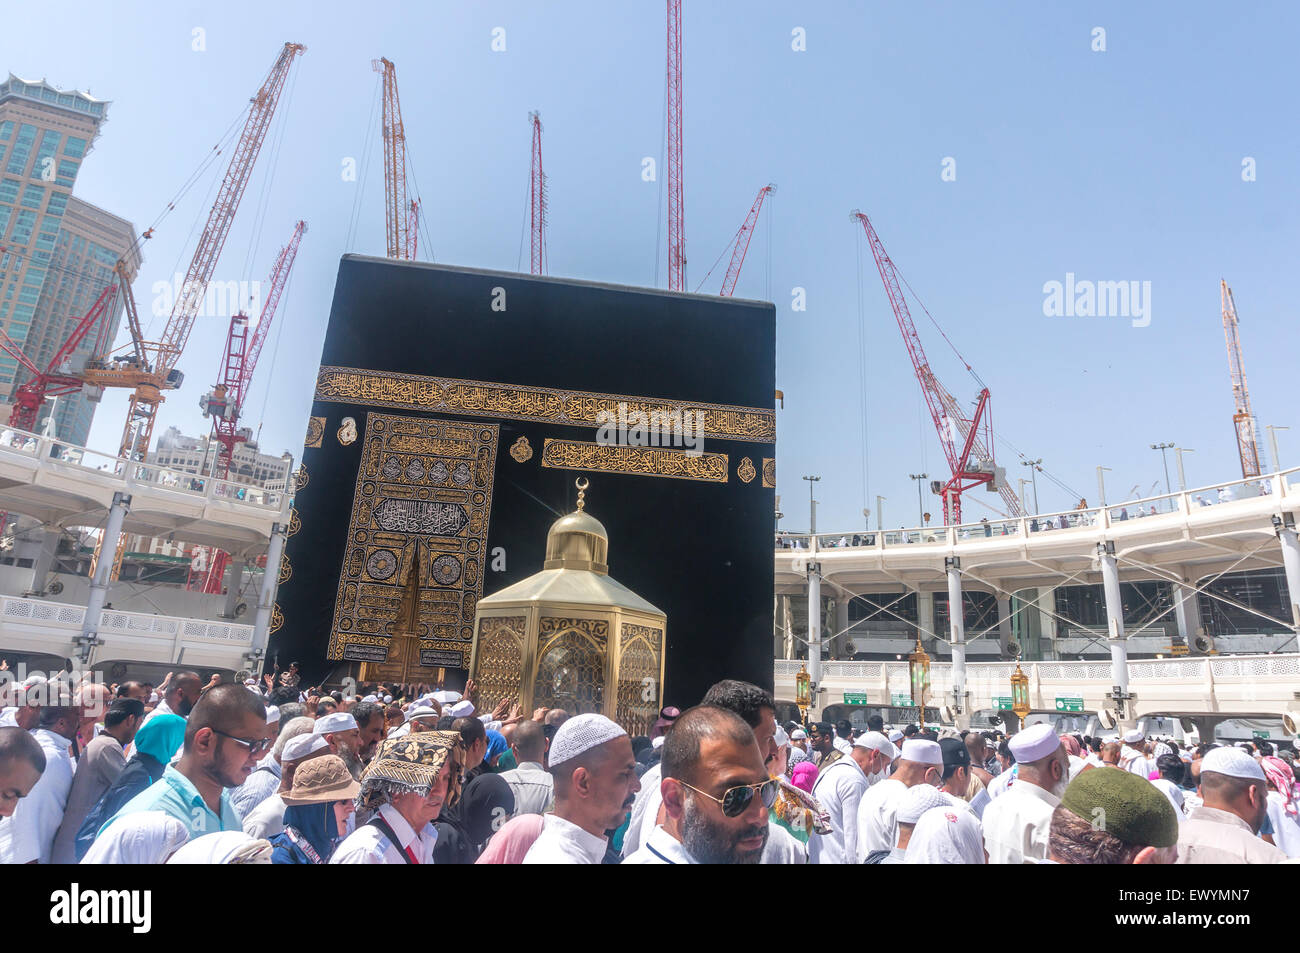 La Meca, en Arabia Saudita- MAR 14, 2015 : la Kaaba y la kiswah (tela que cubre la Kaaba) en Haram Masjidil Foto de stock